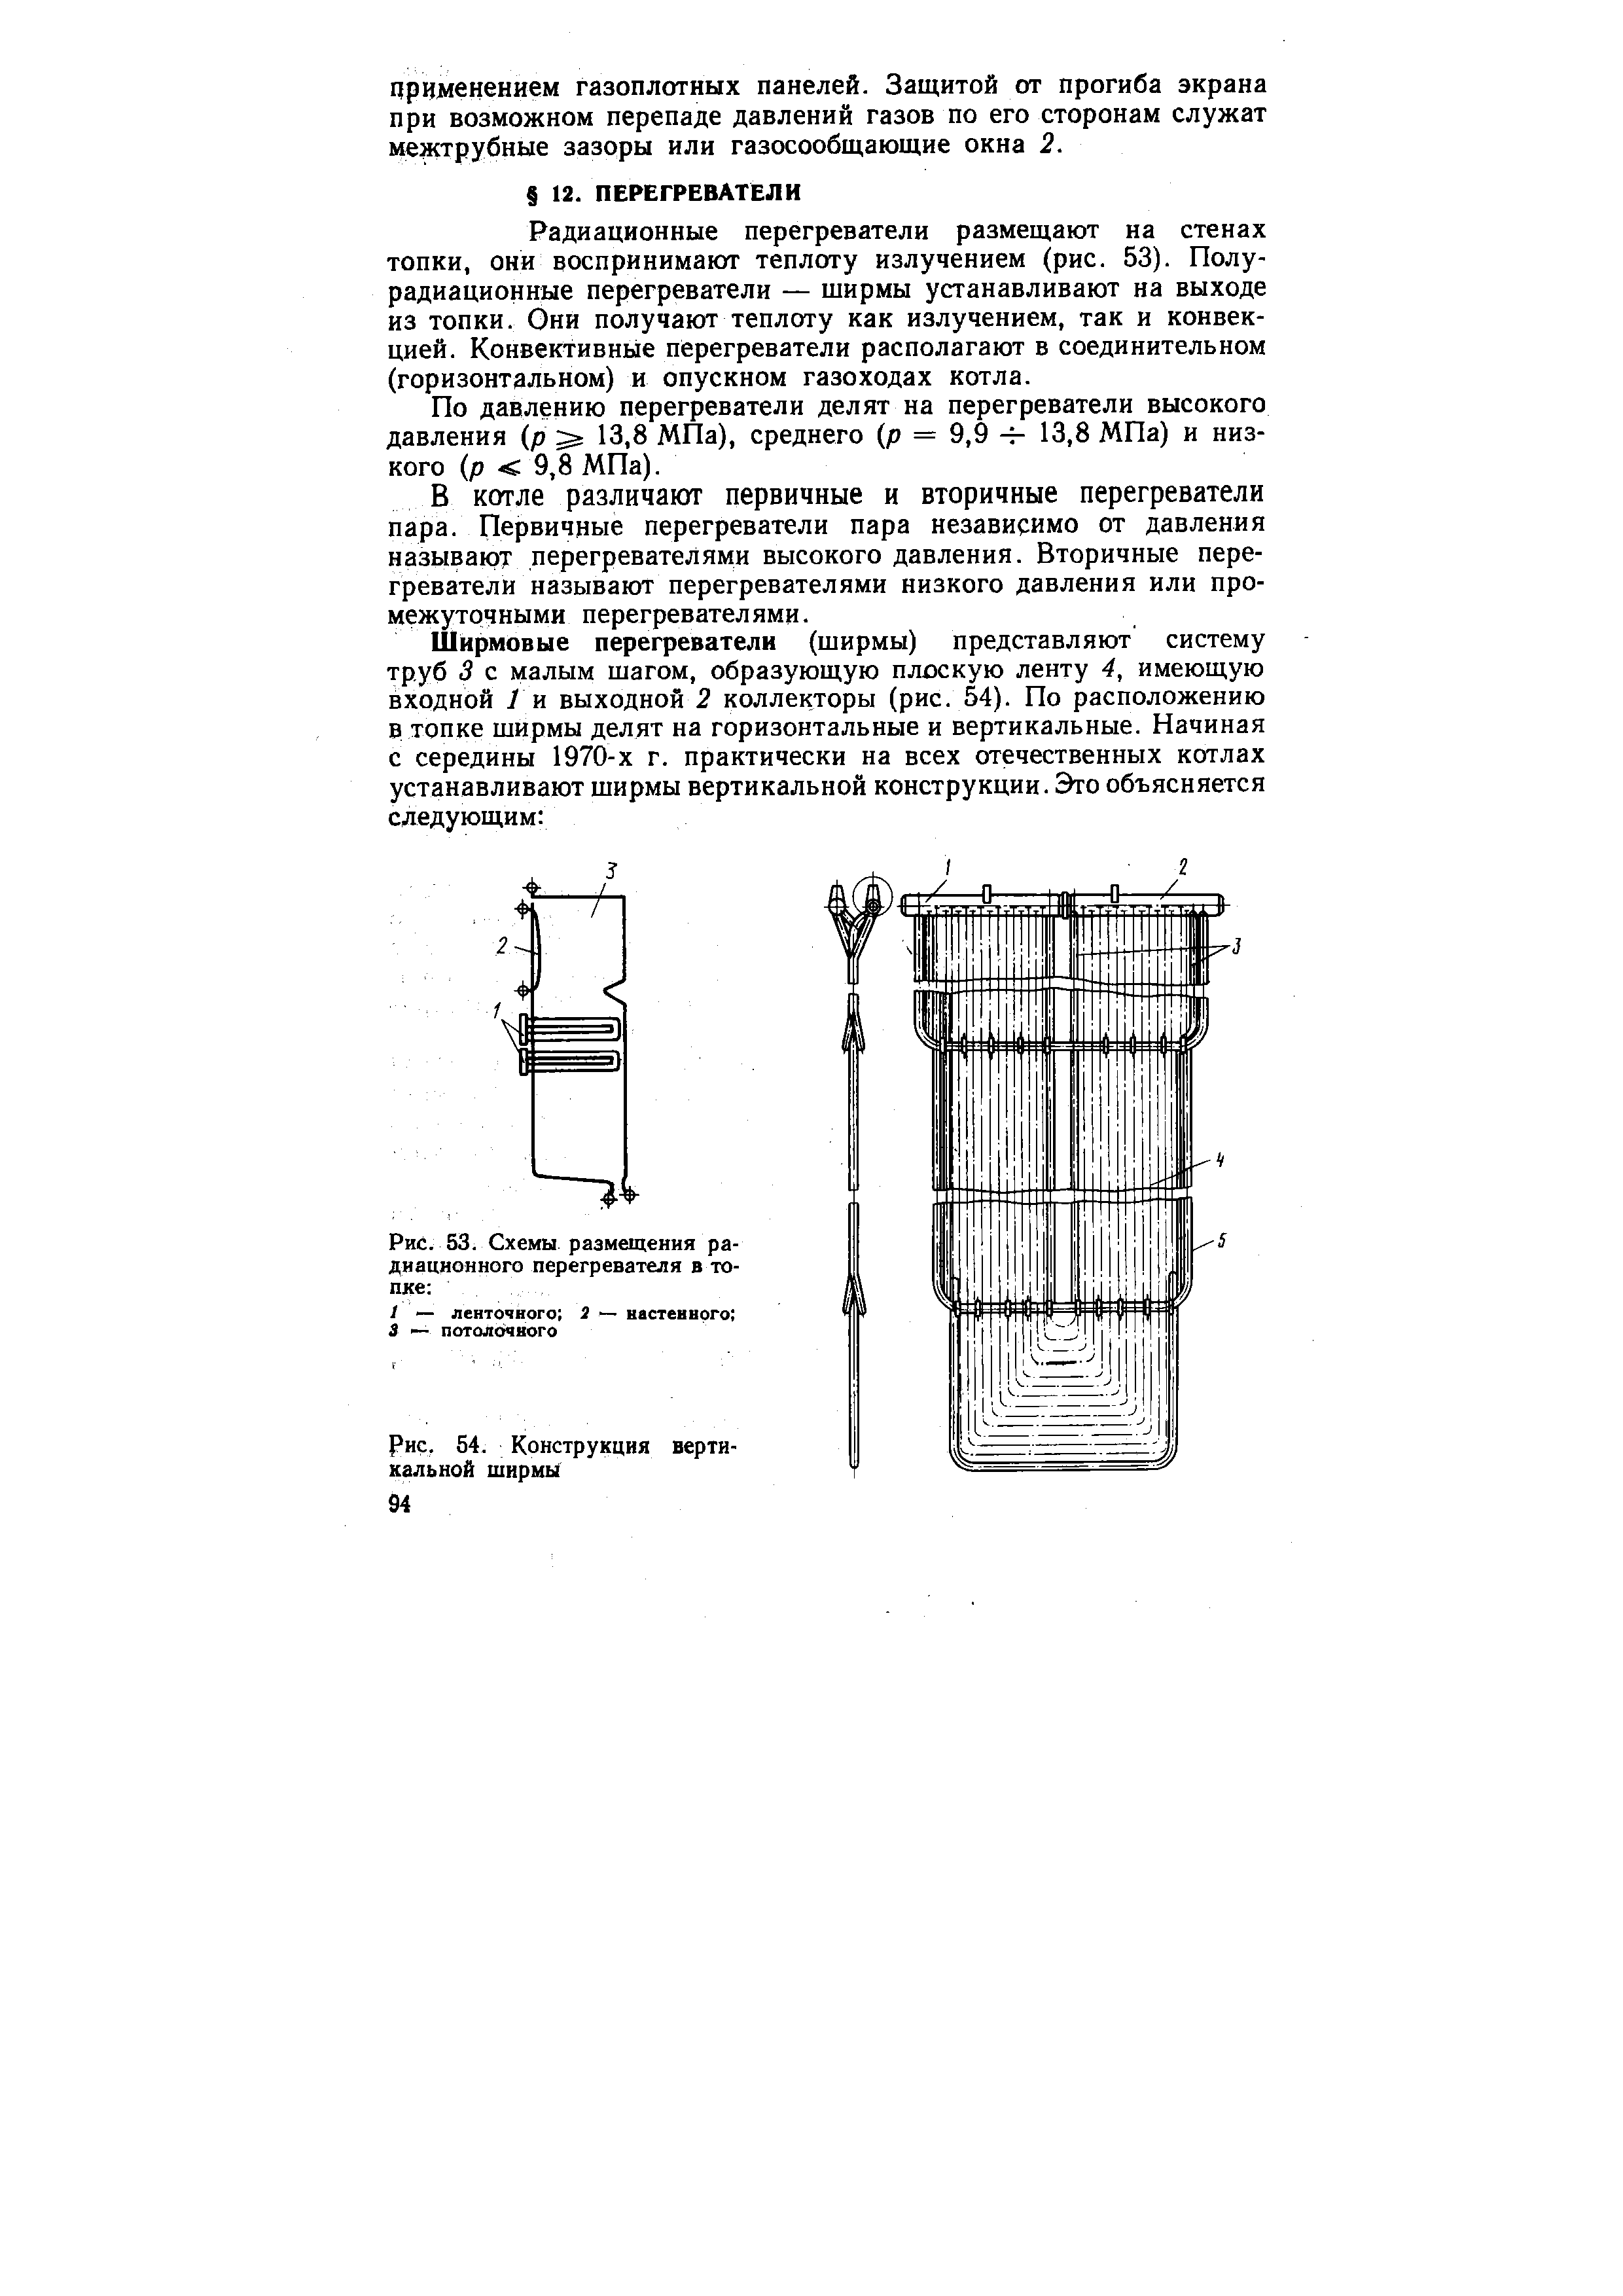 Рис. 54. Конструкция вертикальной ширмы
